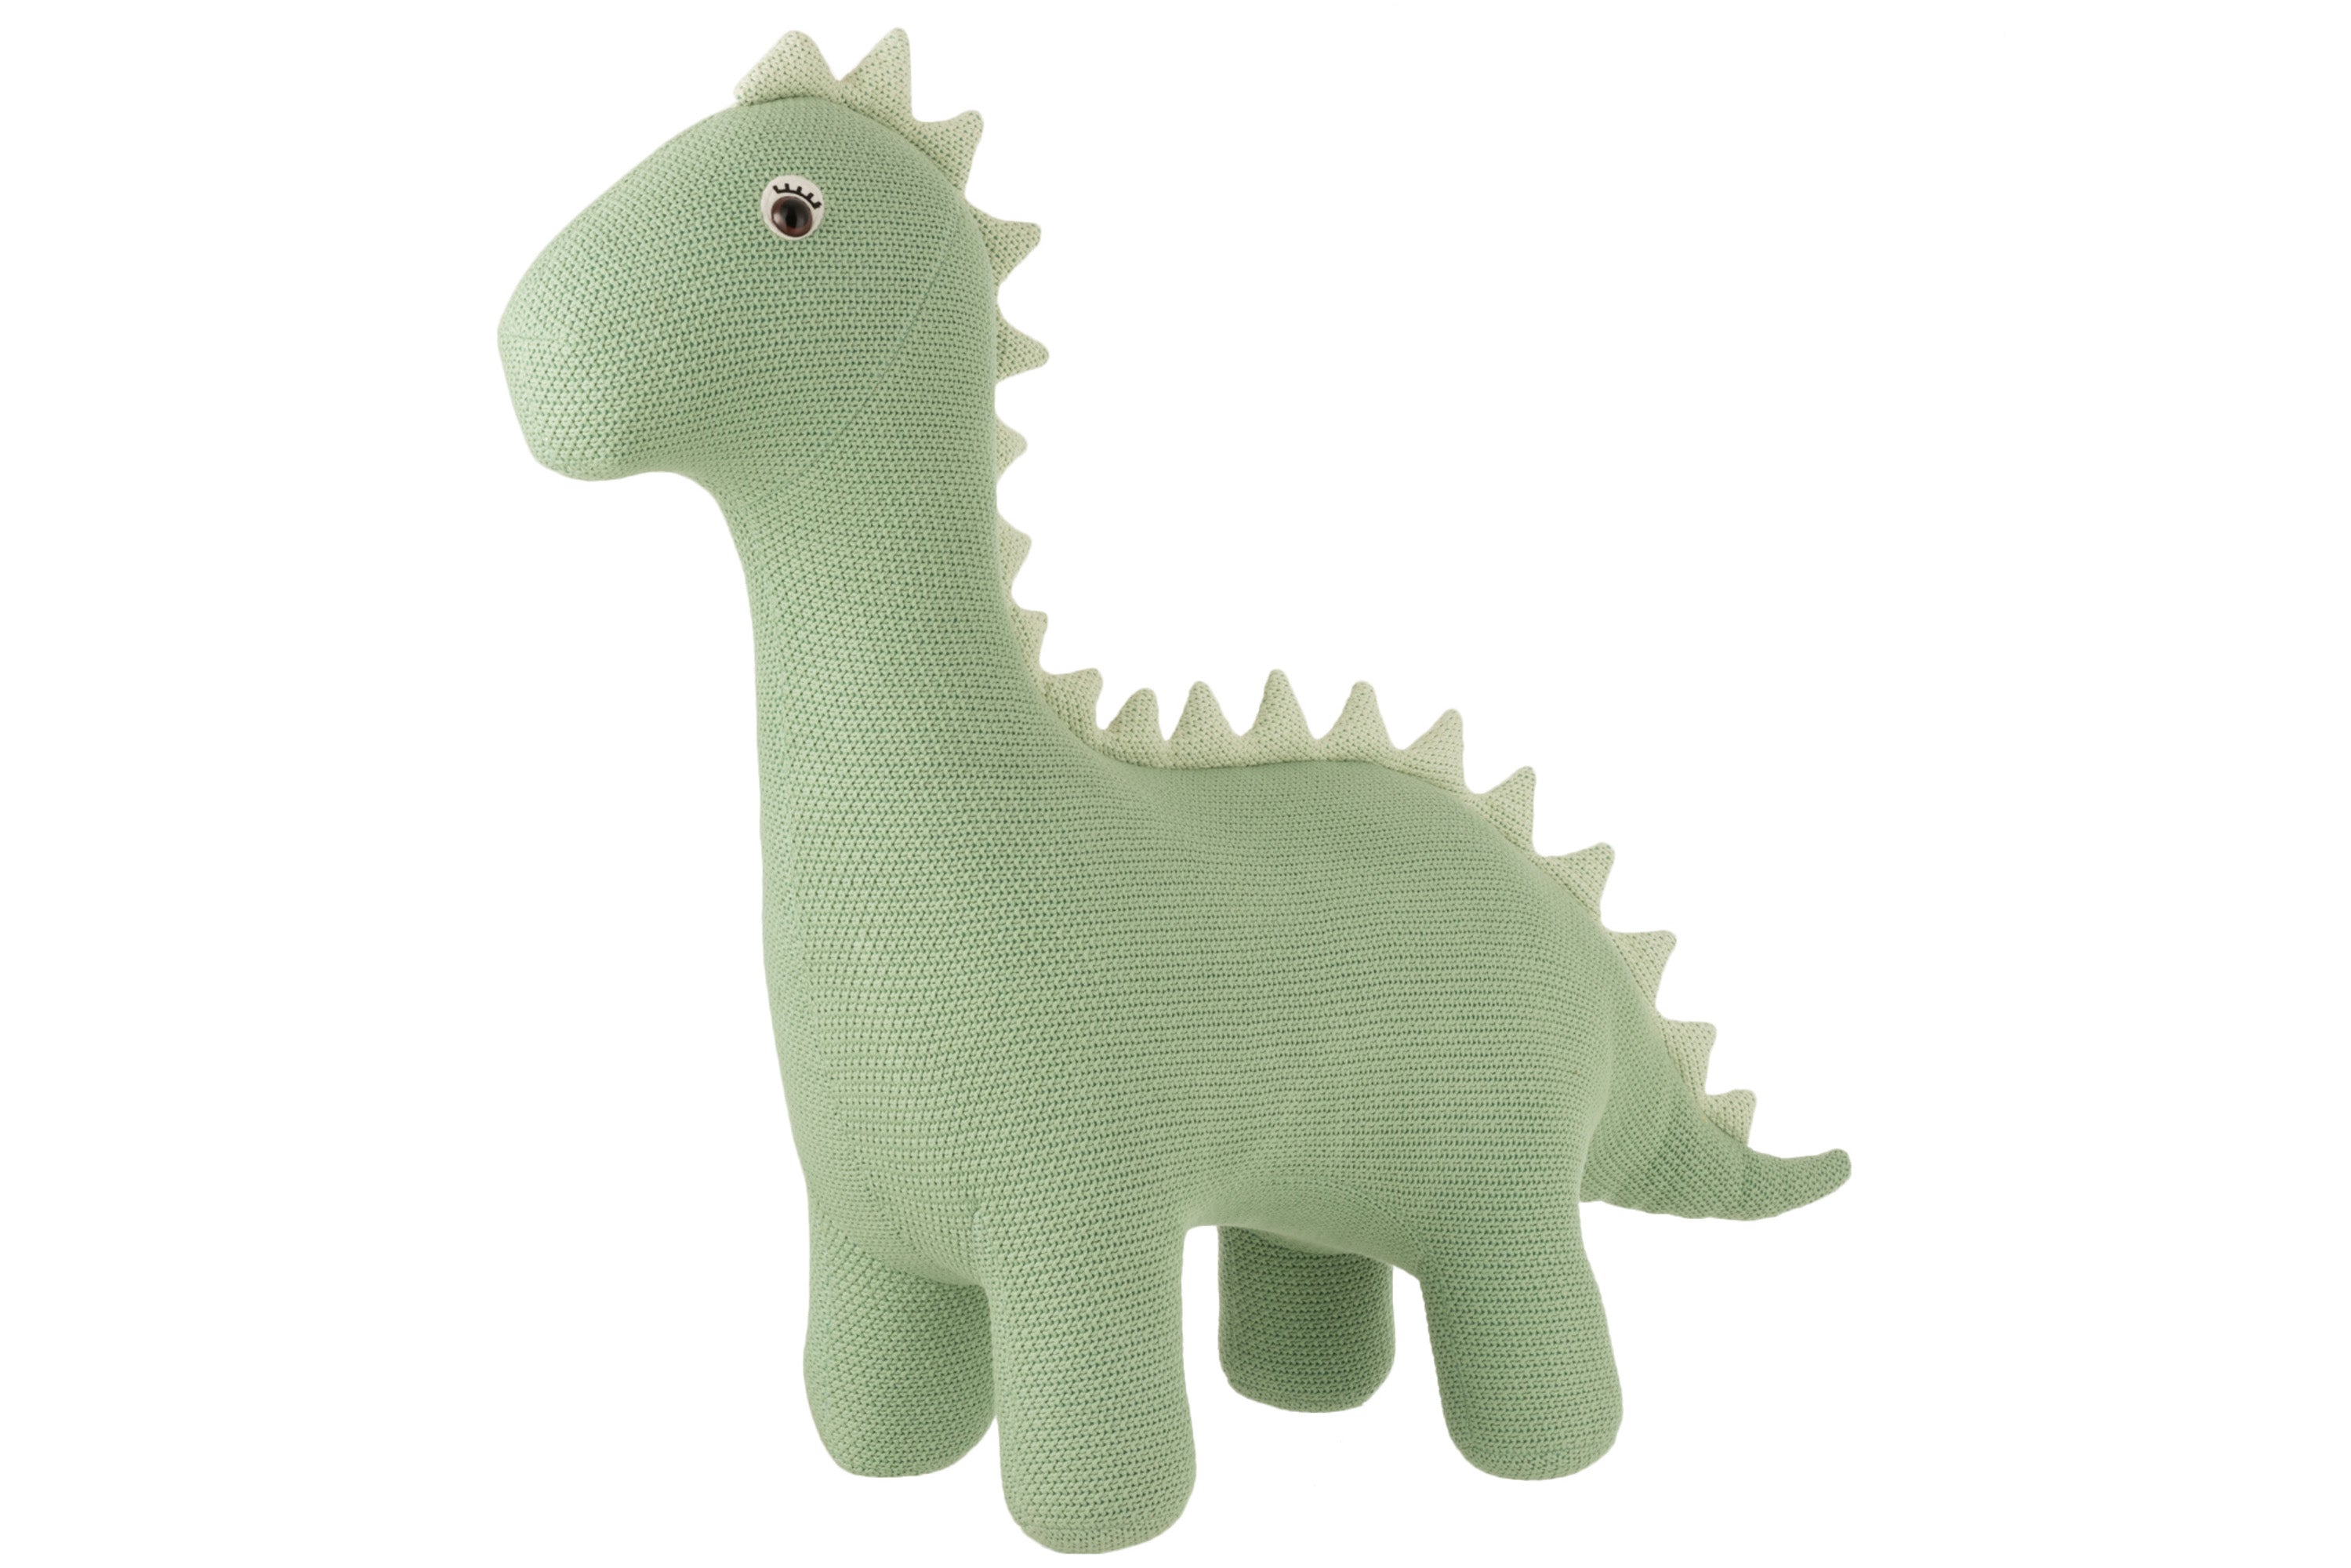 Deko Objekt Dinosaurier, schlicht im Design, fast 1m groß mit mintgrünem Baumwollbezug.